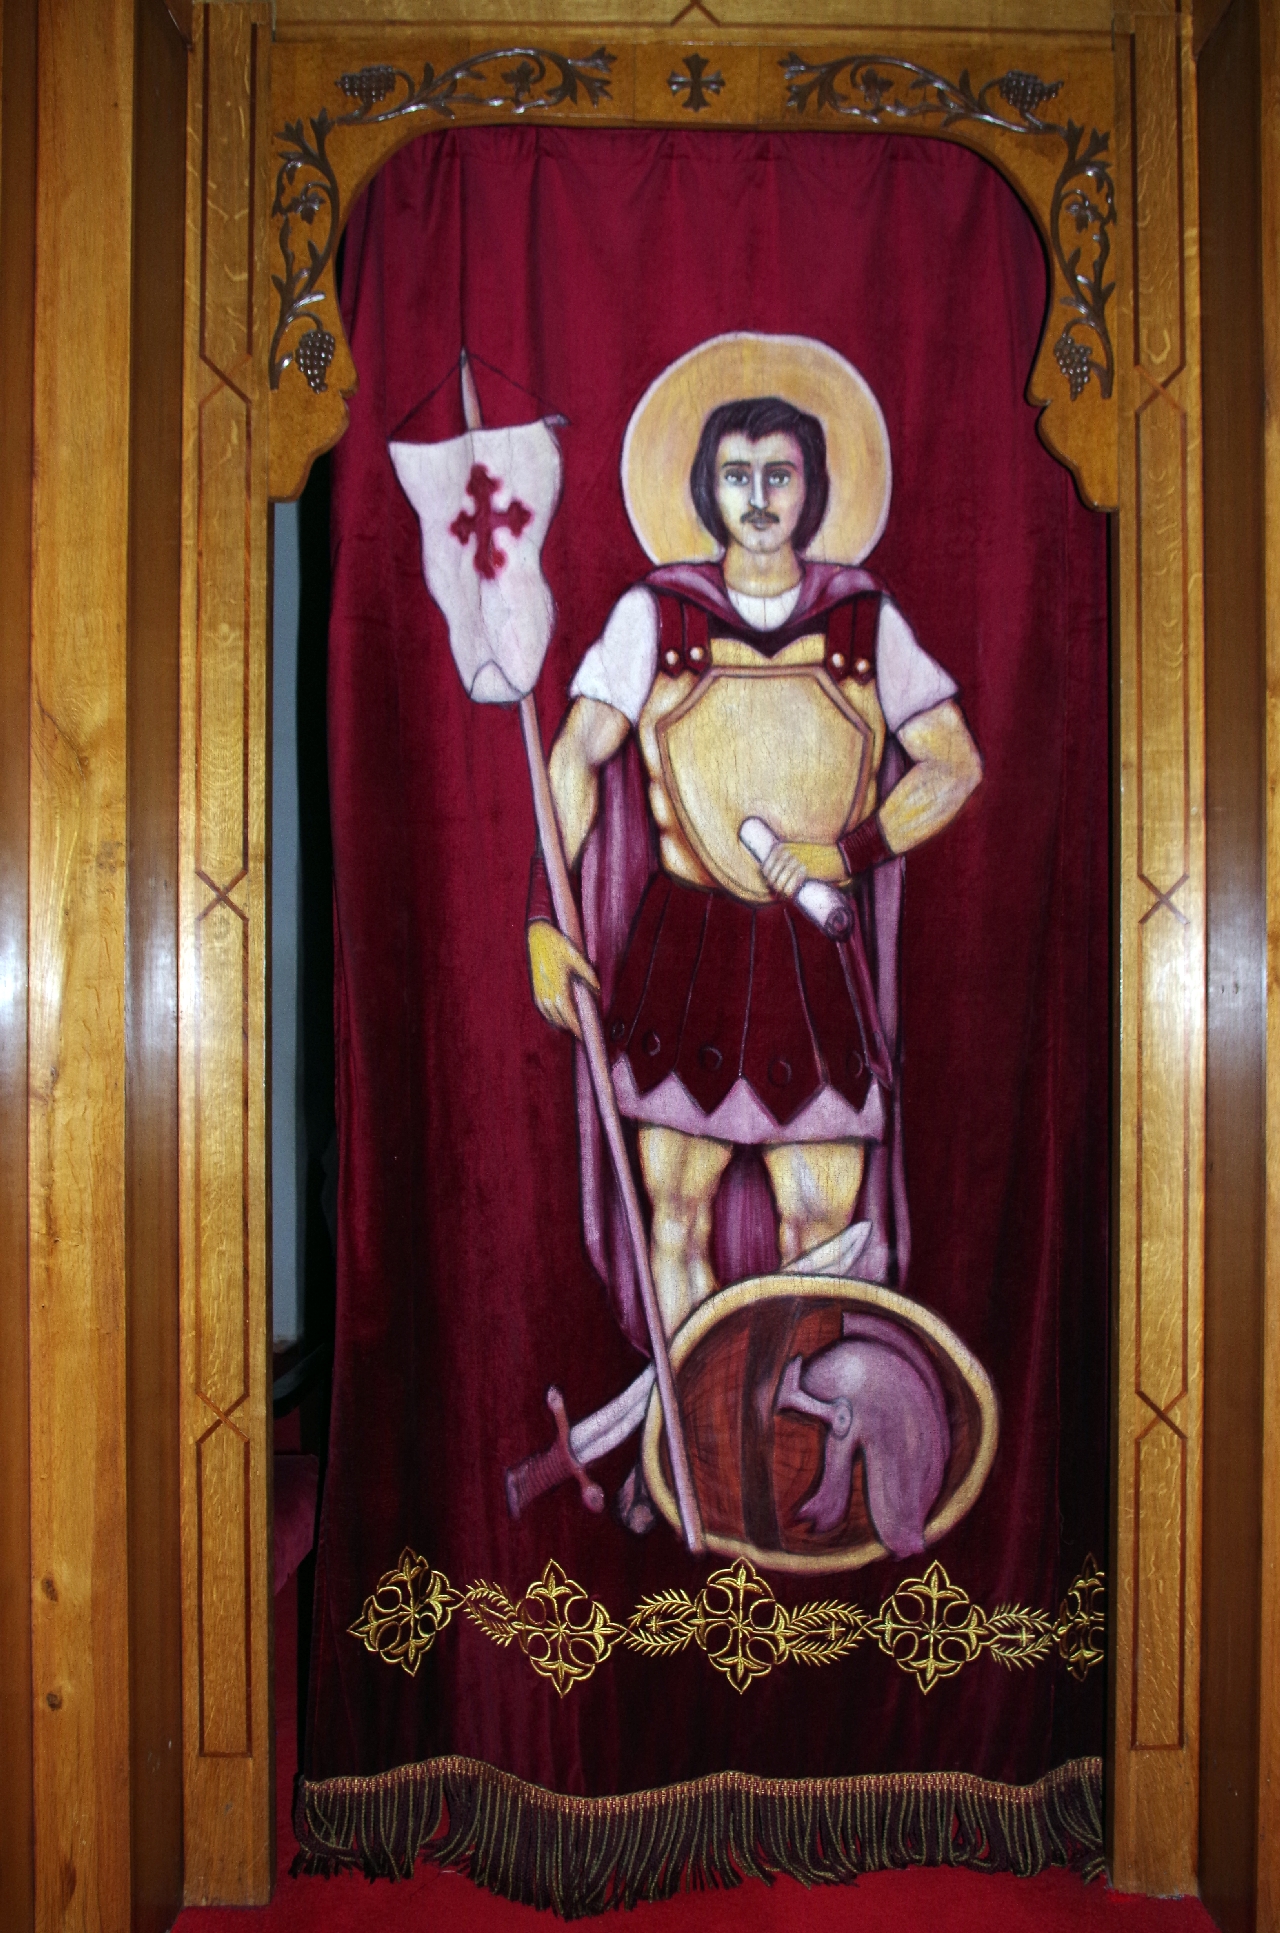 Purpurfarbener Samtvorhang mit aufgesticktem Heiligen Minas, dem der Altar dahinter geweiht ist.